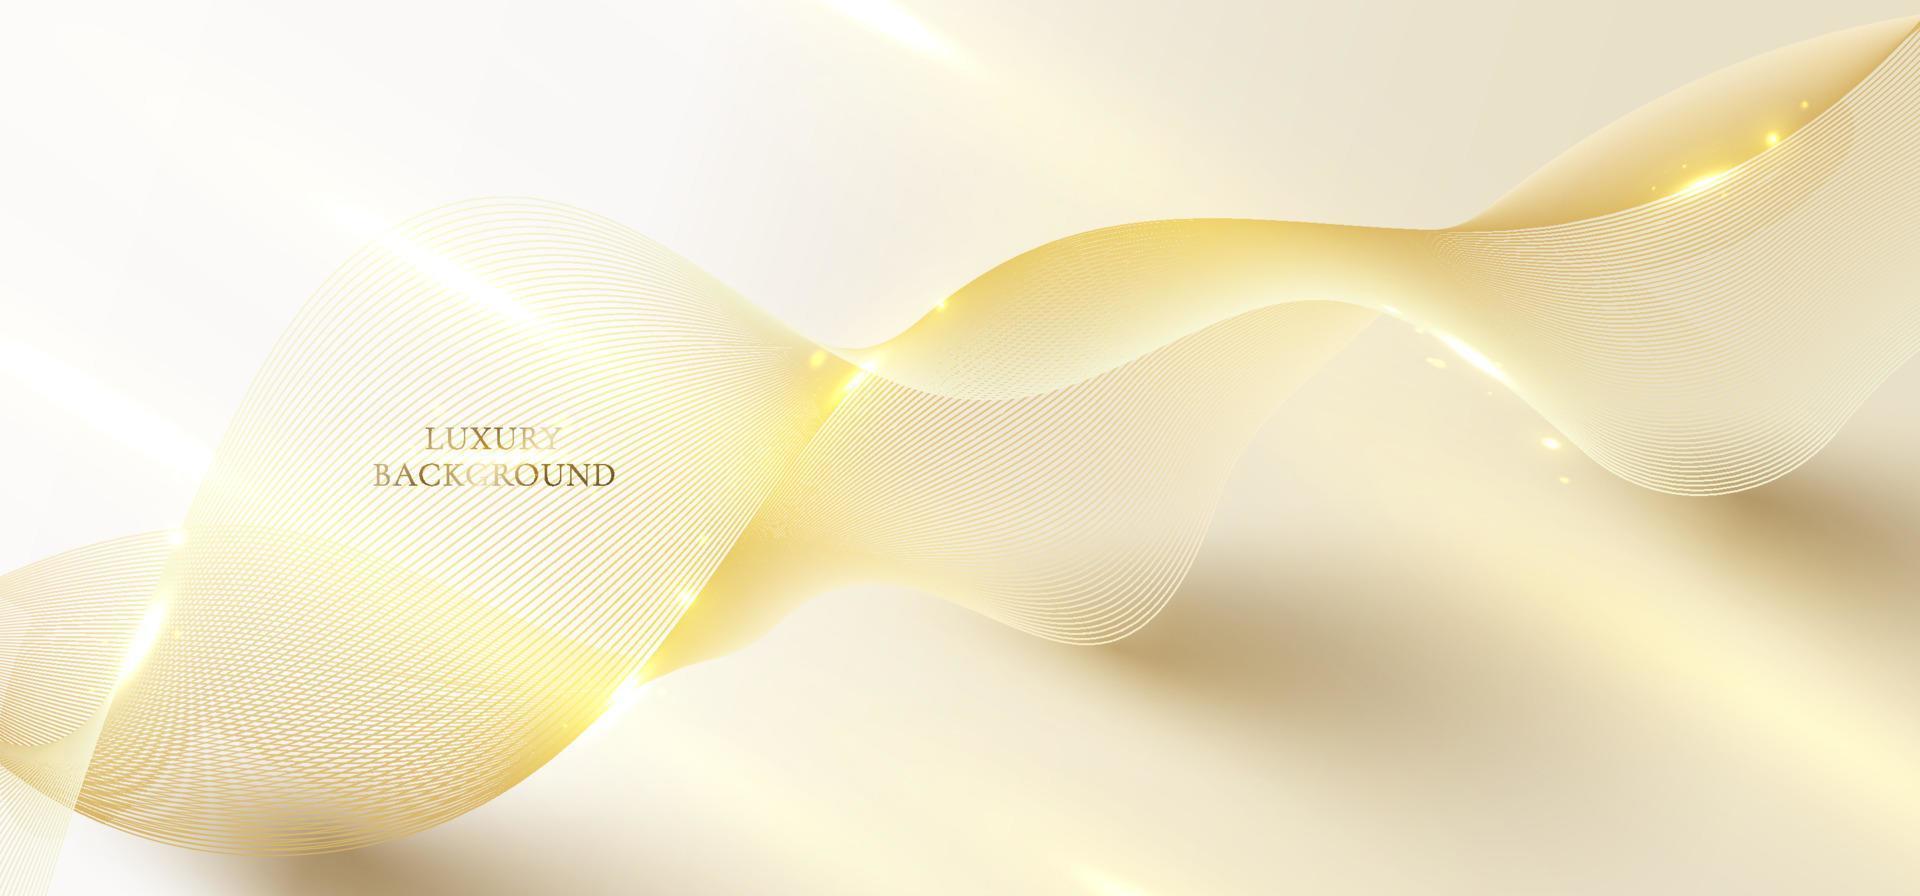 linhas de ondas douradas elegantes 3d abstratas e faíscas de luz no estilo de luxo de fundo limpo vetor